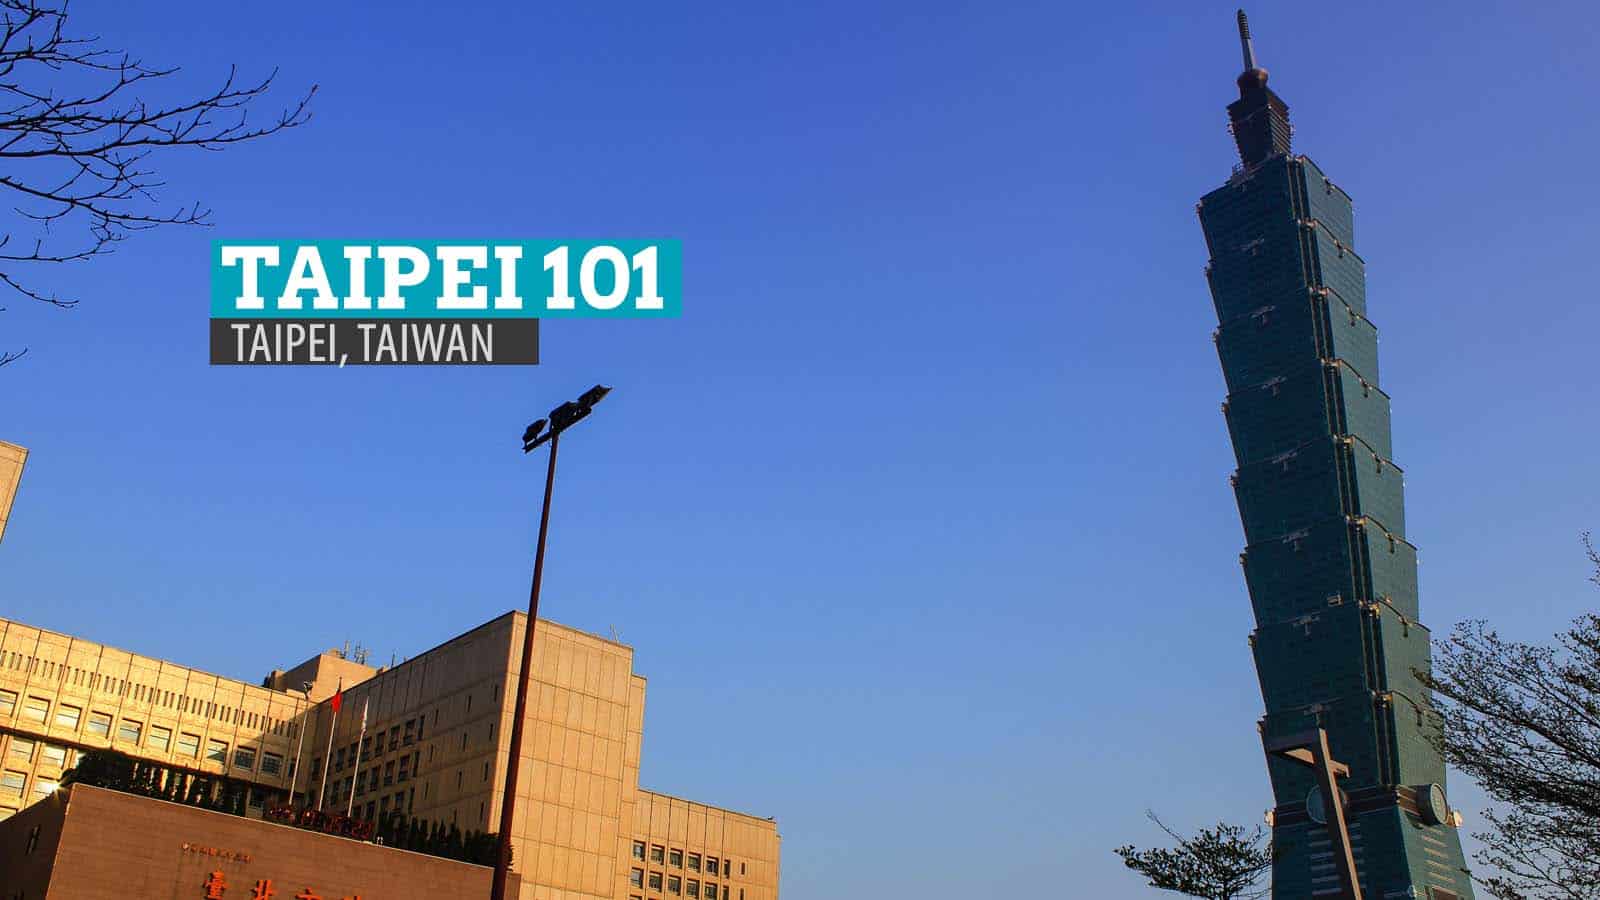 台北101:台湾的新高度